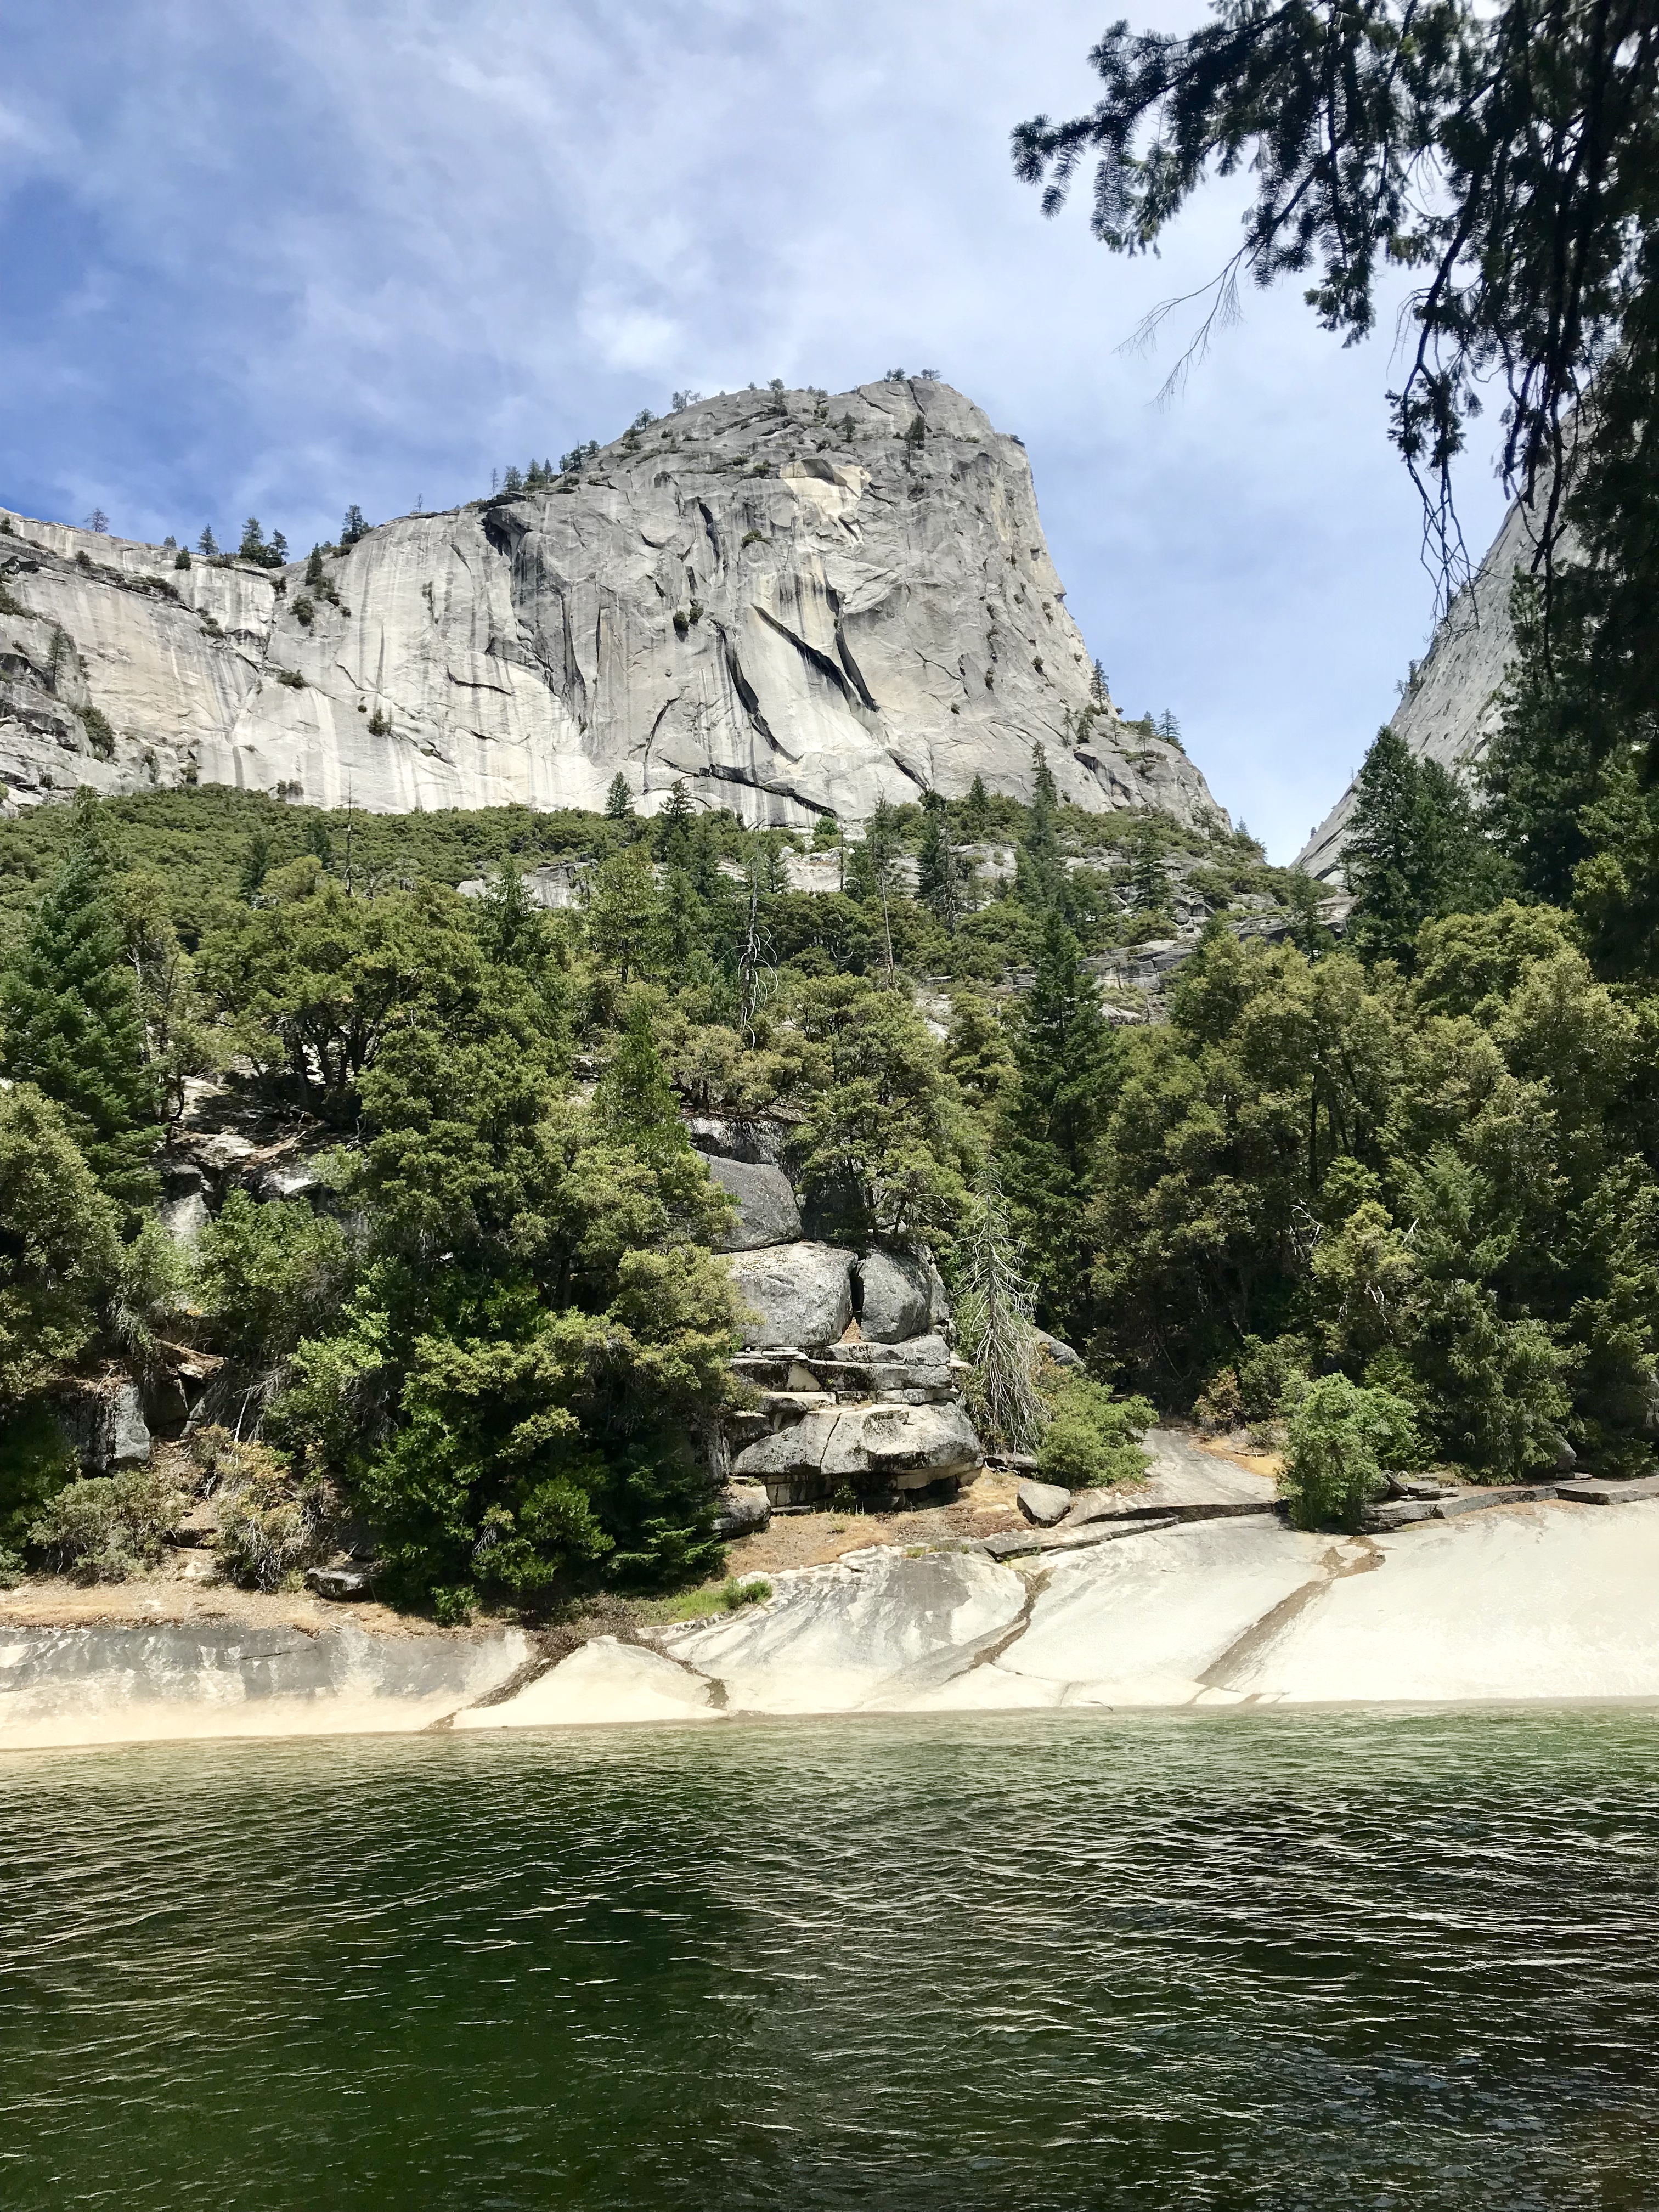 Hiking Vernal Falls in Yosemite